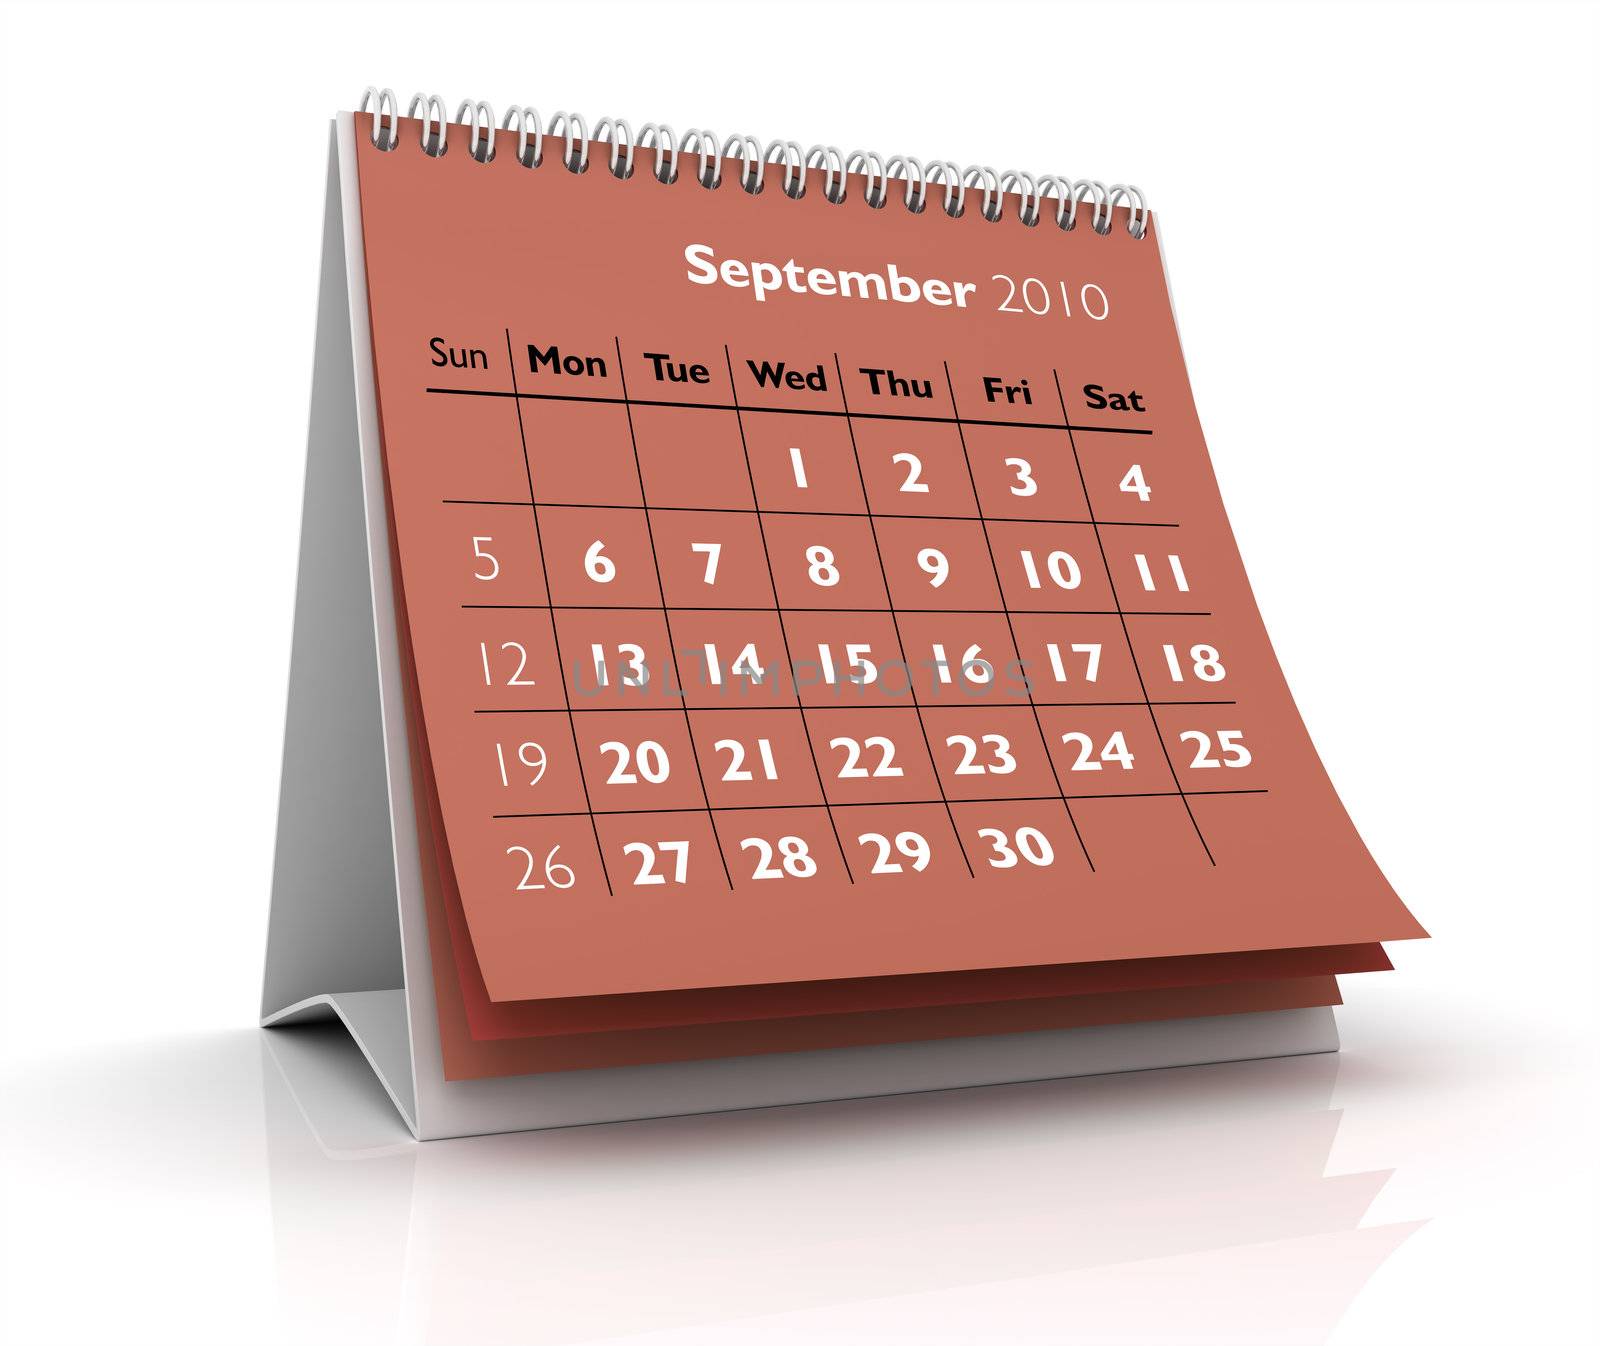 3D desktop calendar September 2010 in white background